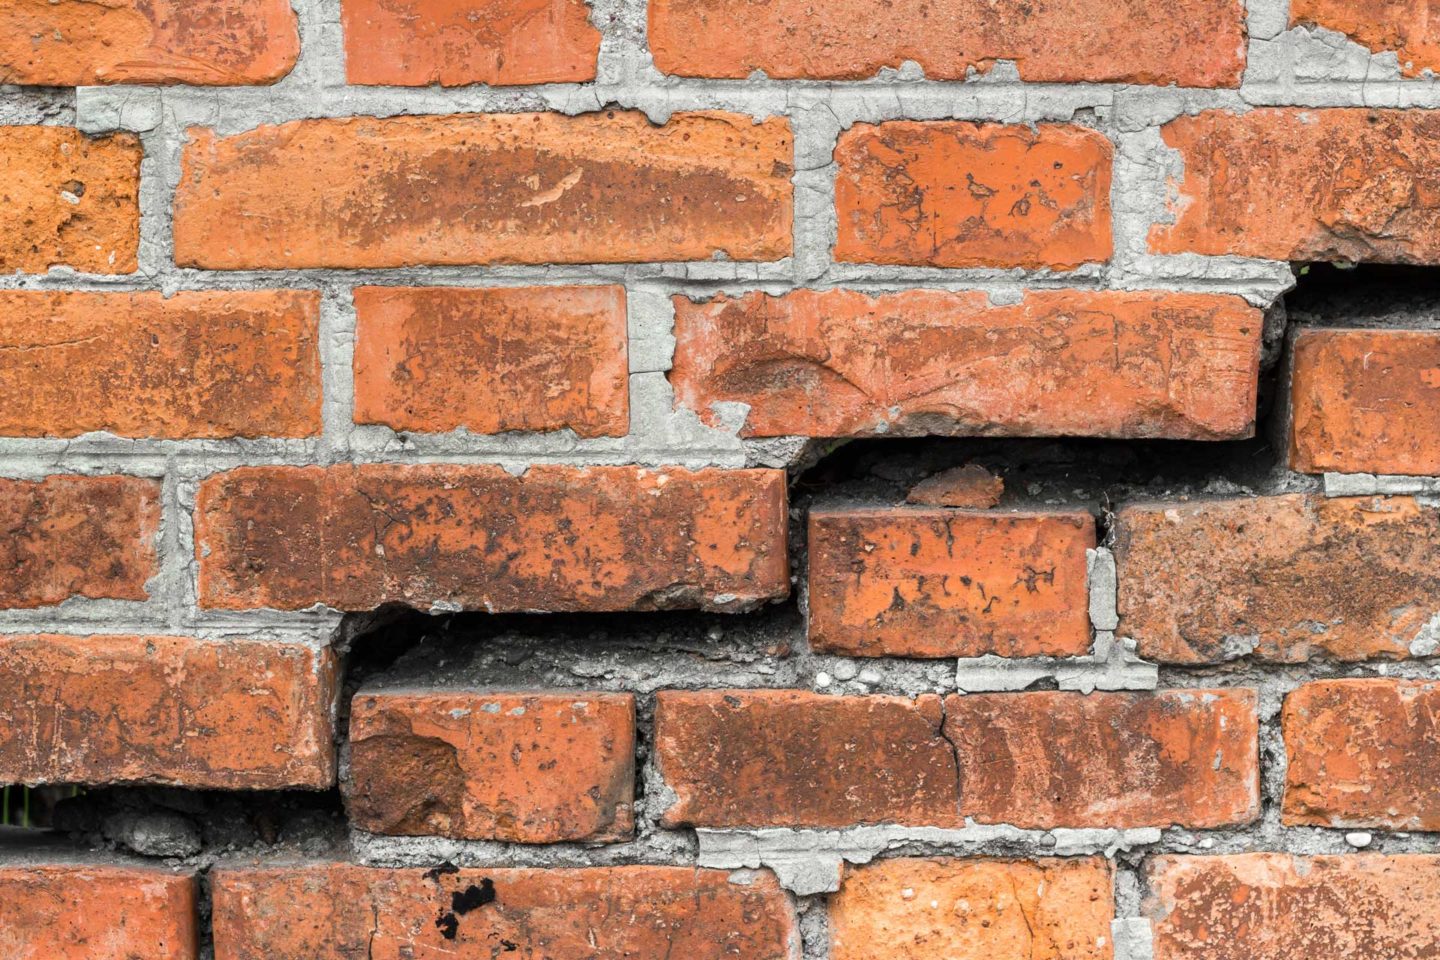 masonry and brick repairs in virginia and maryland by capital masonry